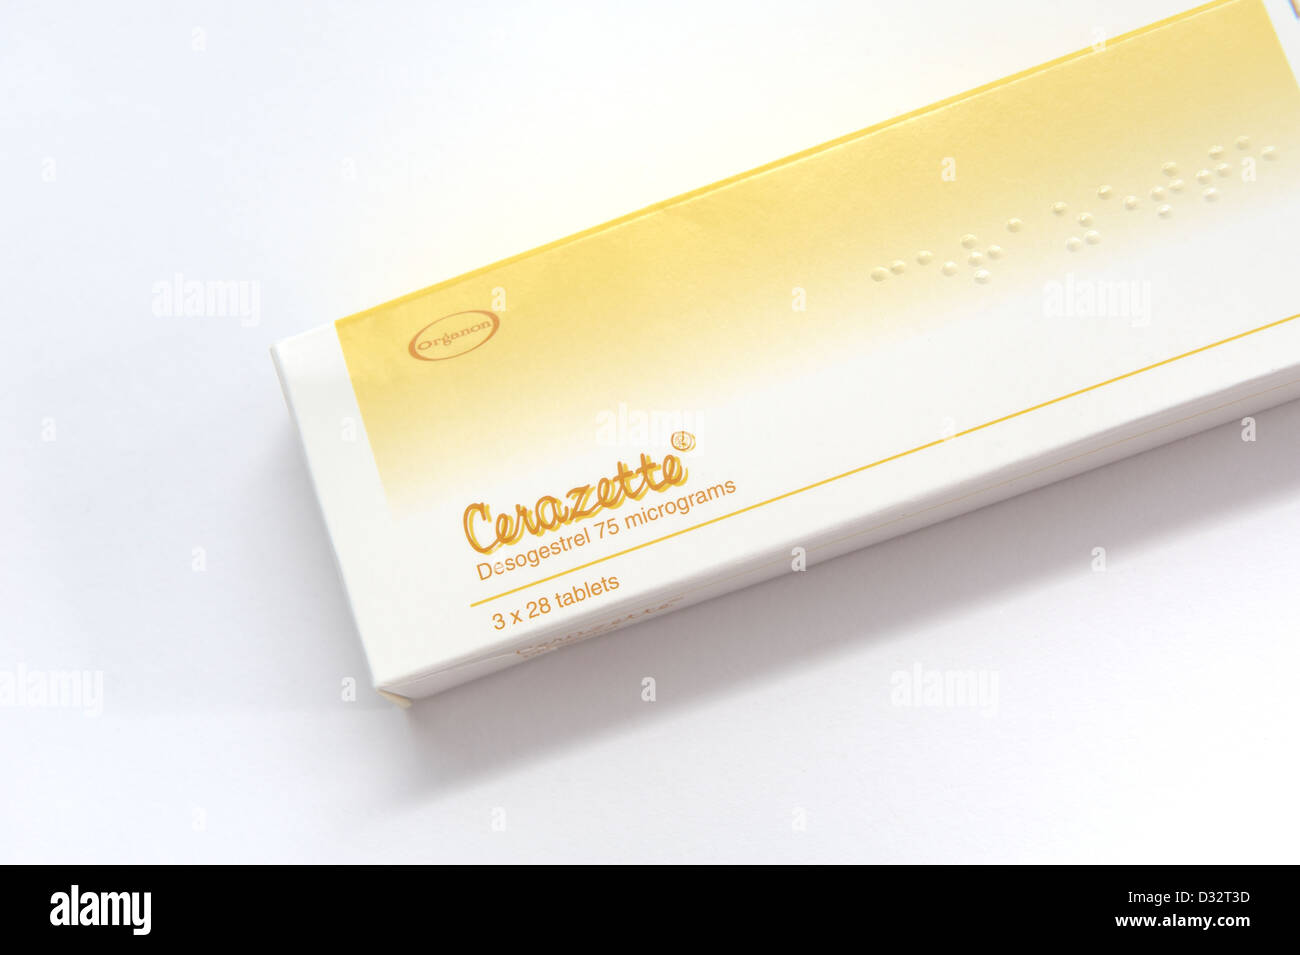 Cerazette (Sair-raz-et) es un medicamento que se usa en la anticoncepción. Foto de stock